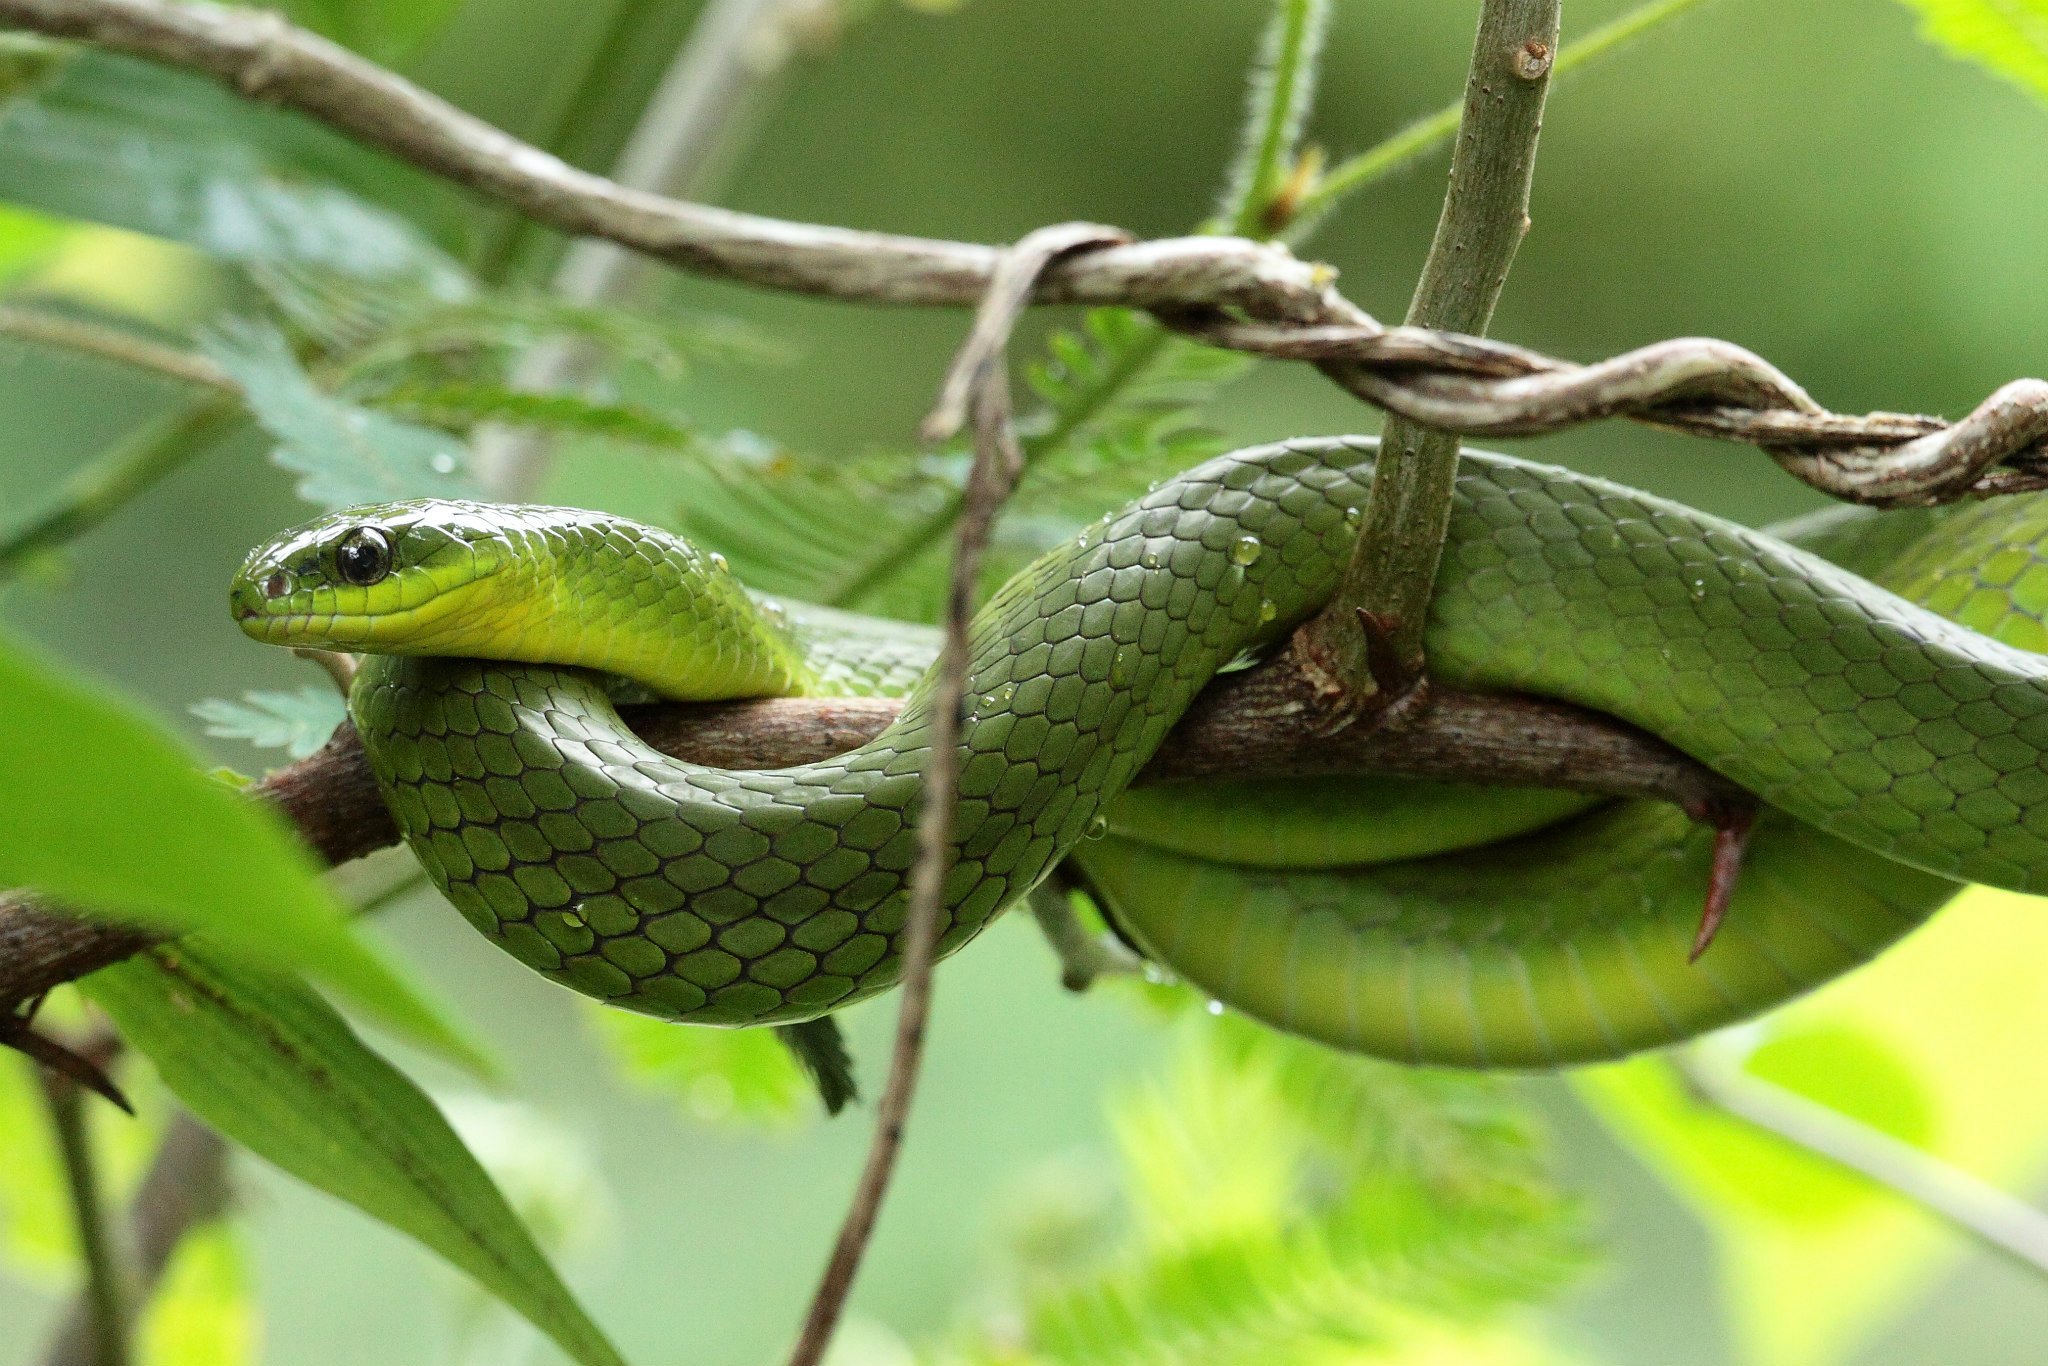 Chinese green snake - Wikipedia